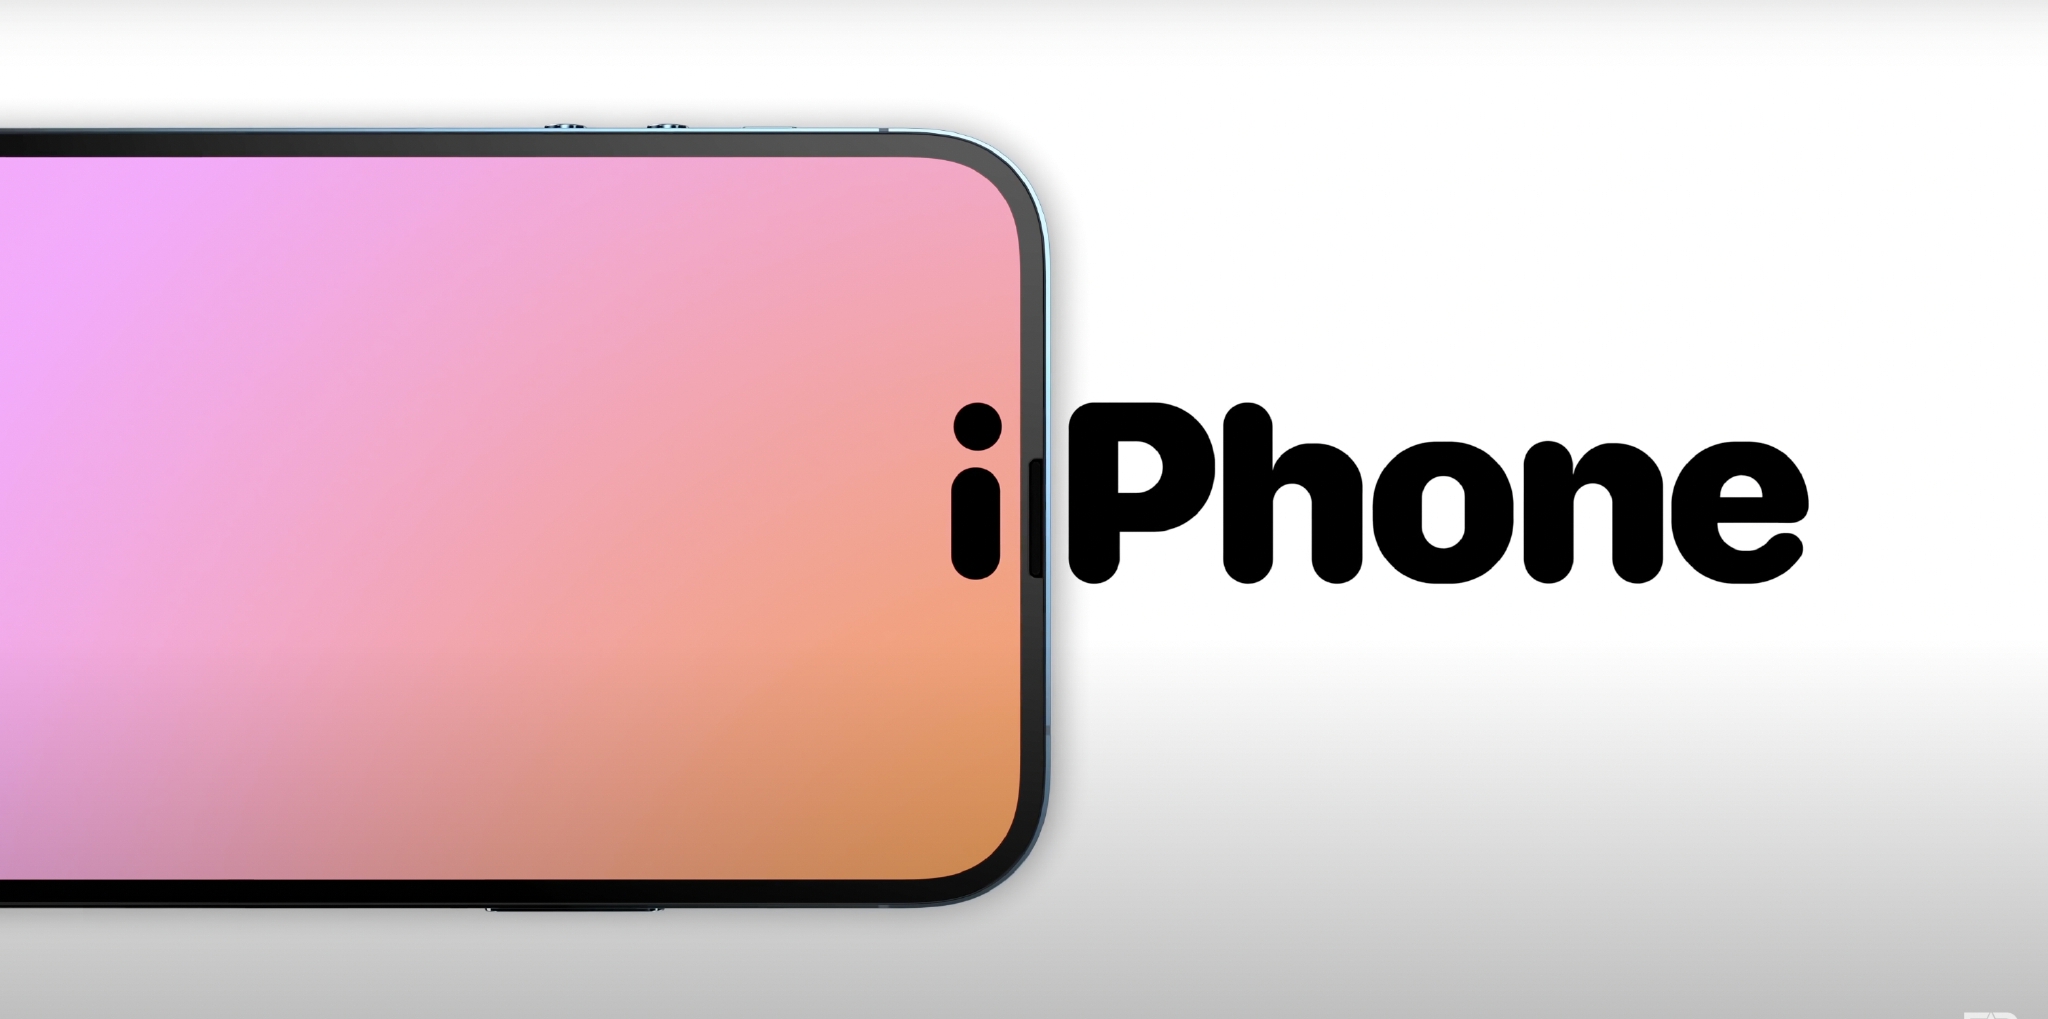 最近传闻 iPhone 14 Pro 正面将采用「i」形状的挖孔全面屏设计……